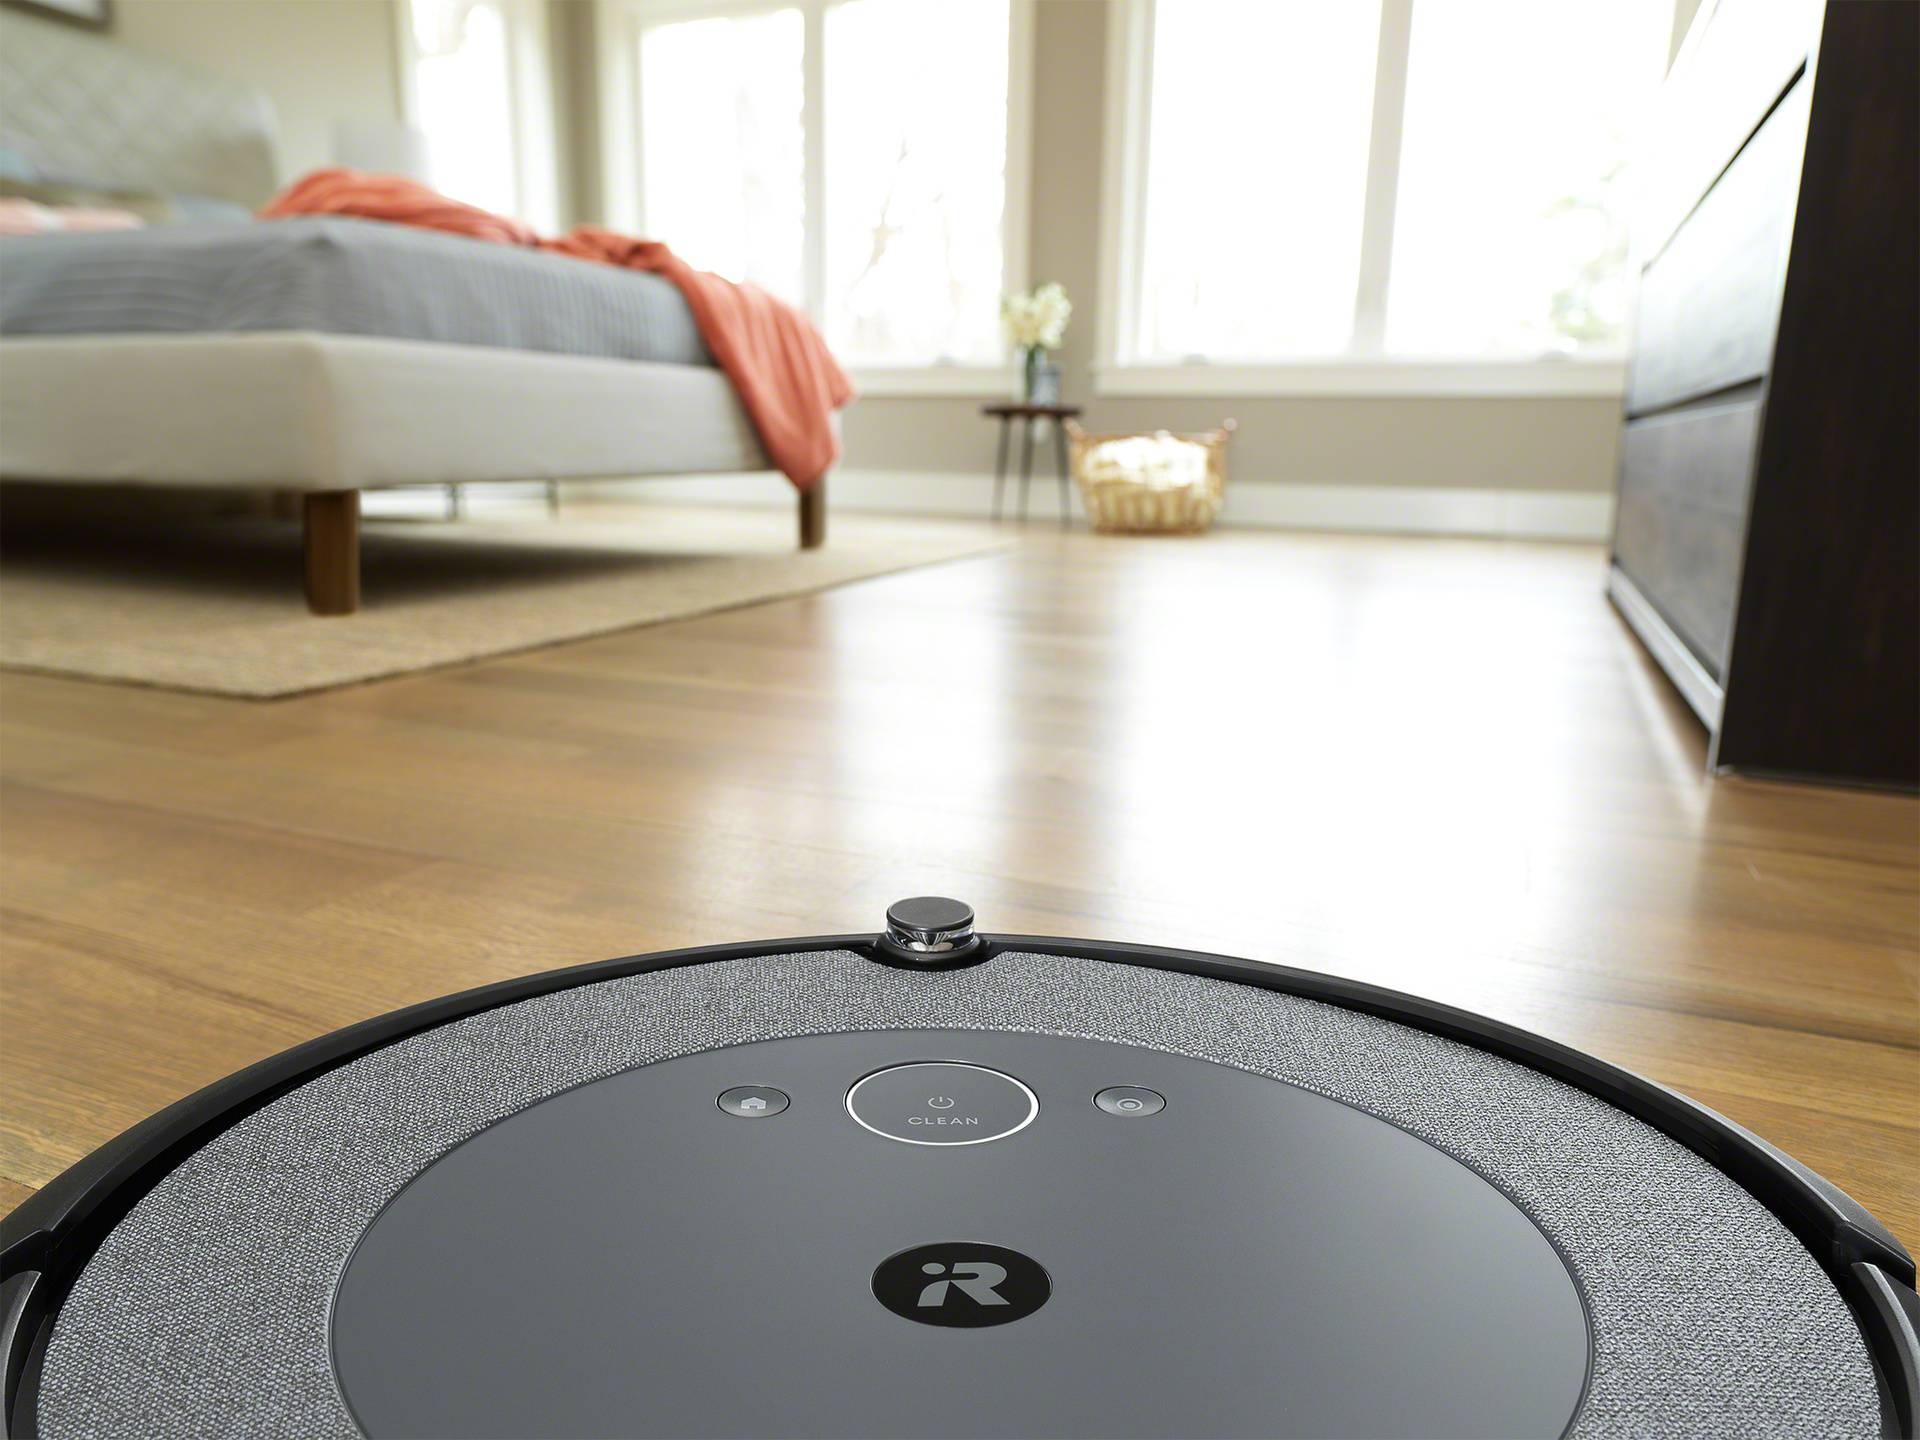 Predstavljamo novu seriju pametnih robotskih usisavača Roomba, serija i3